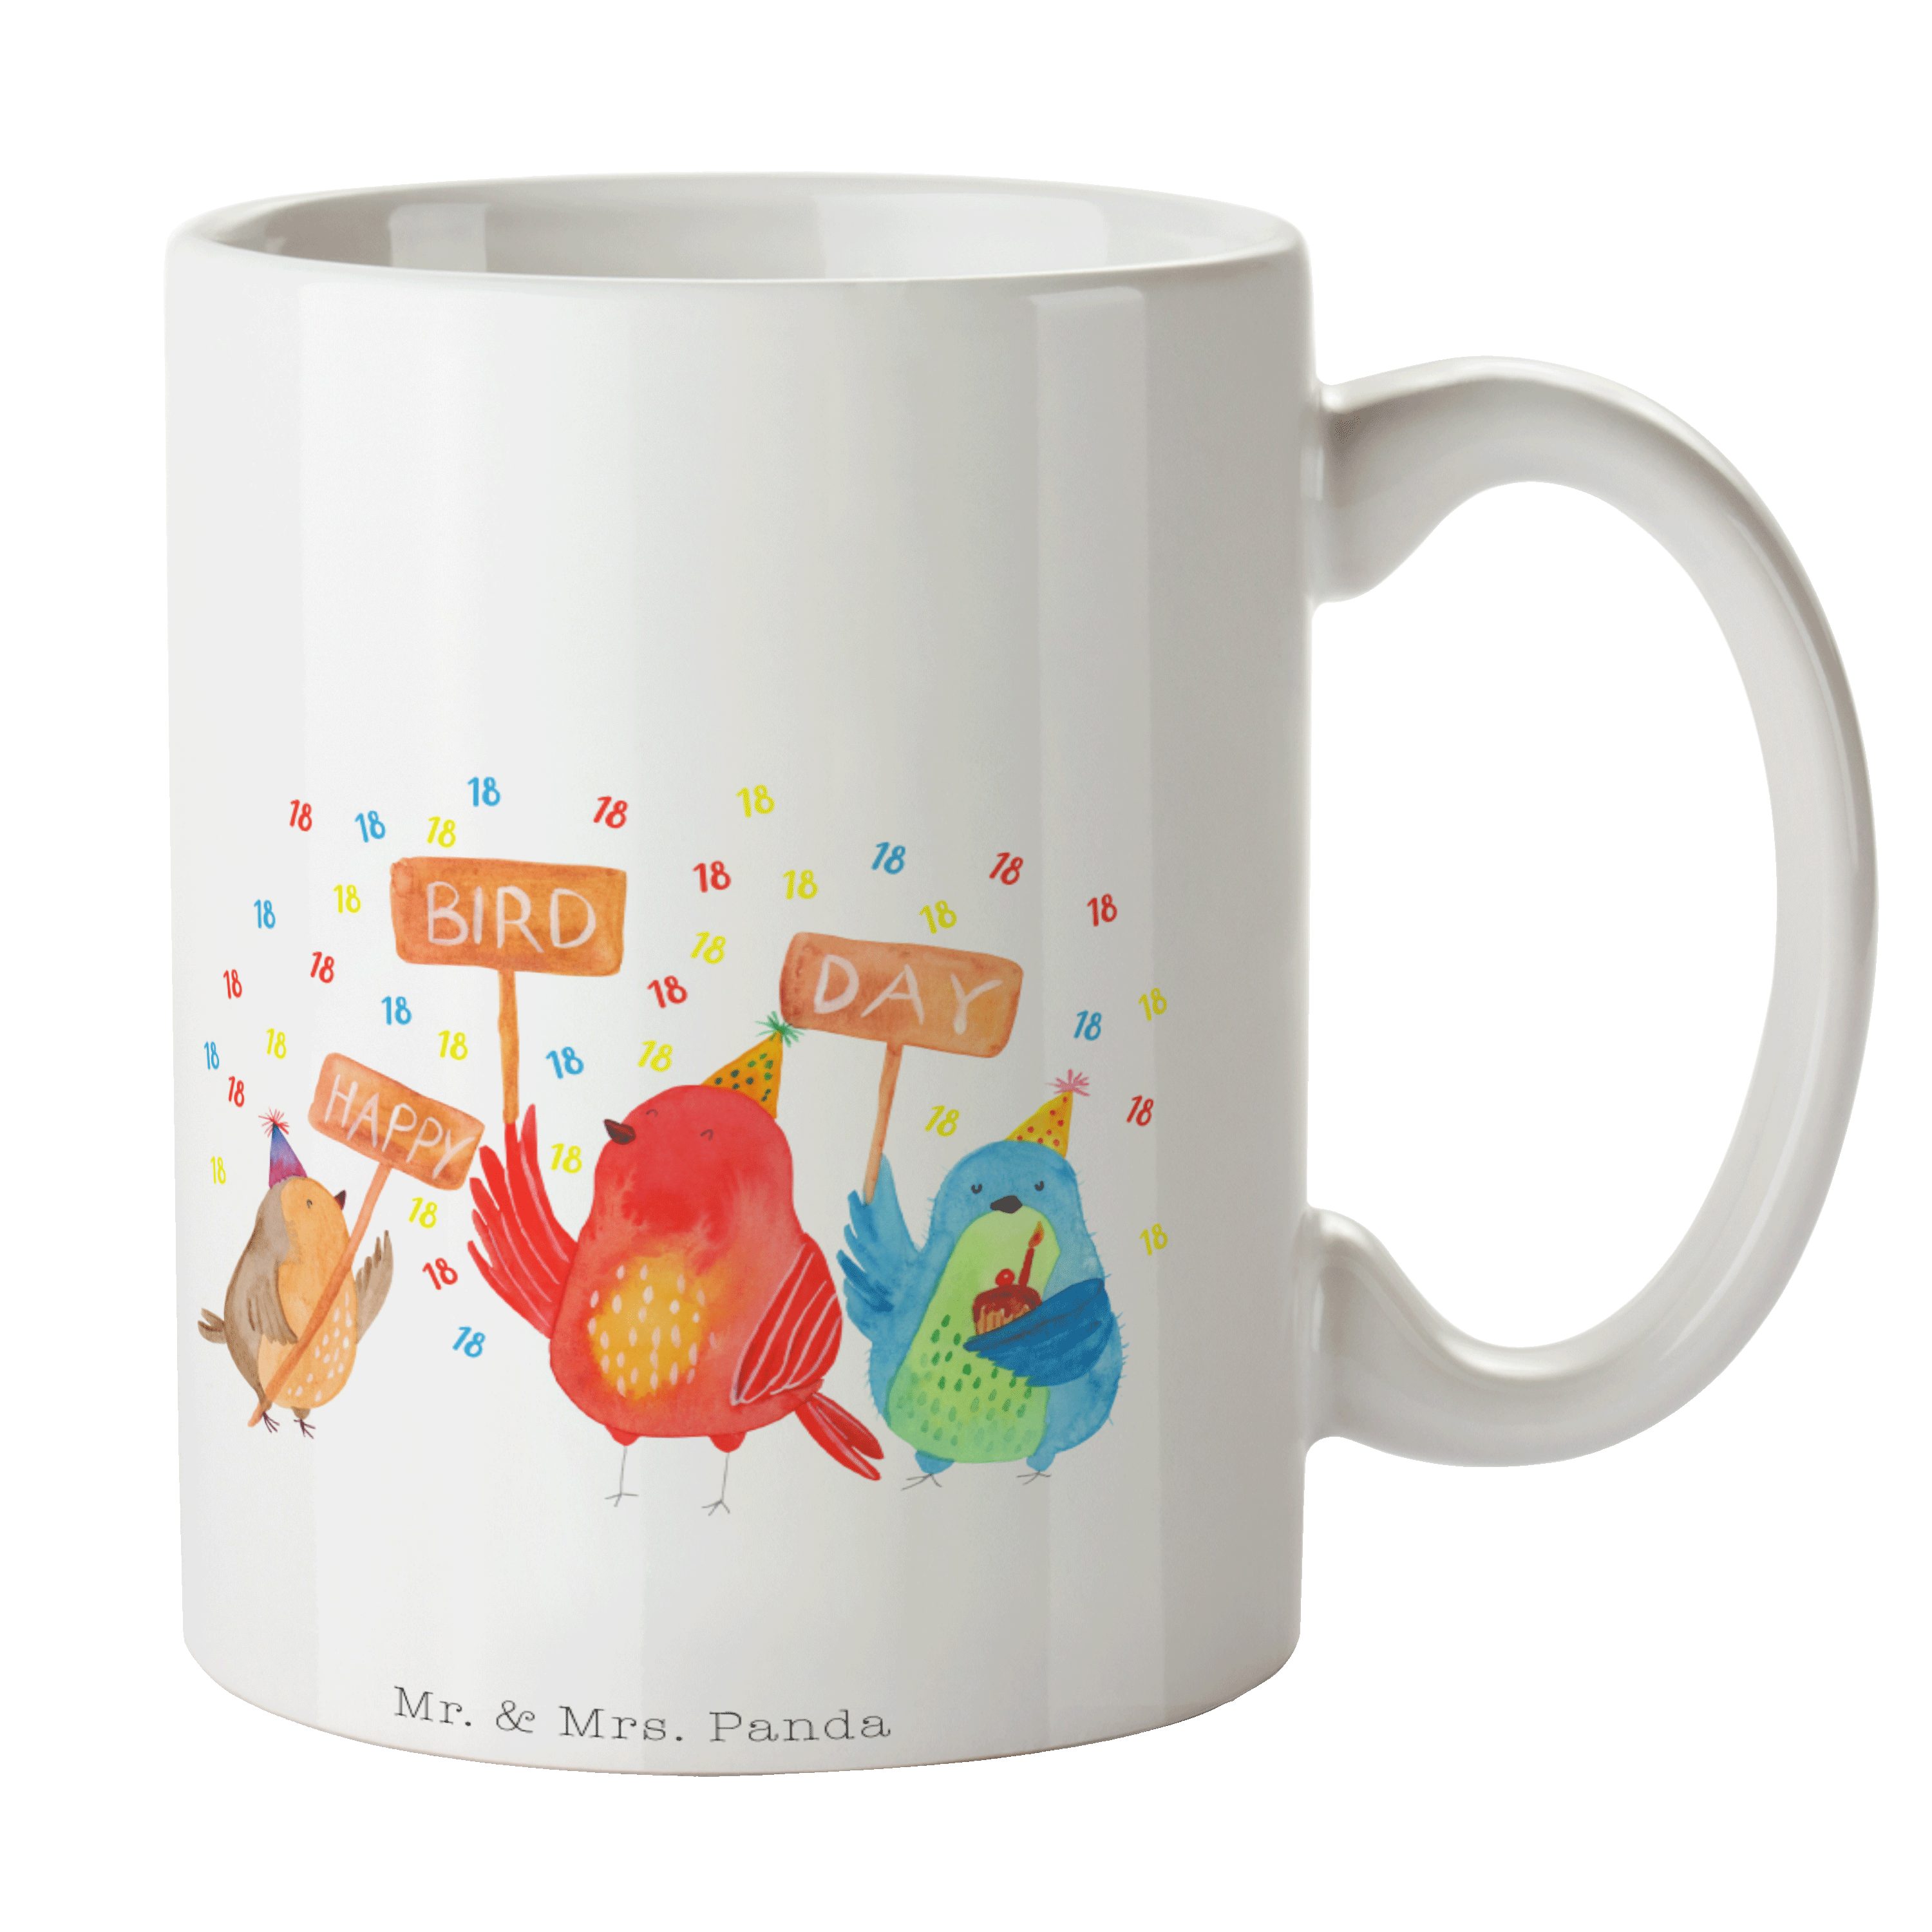 Mr. & Mrs. Panda Tasse Kaffeebecher, Happy Day 18. - Bird Geburtstag Geschenk, Party, - Keramik Weiß